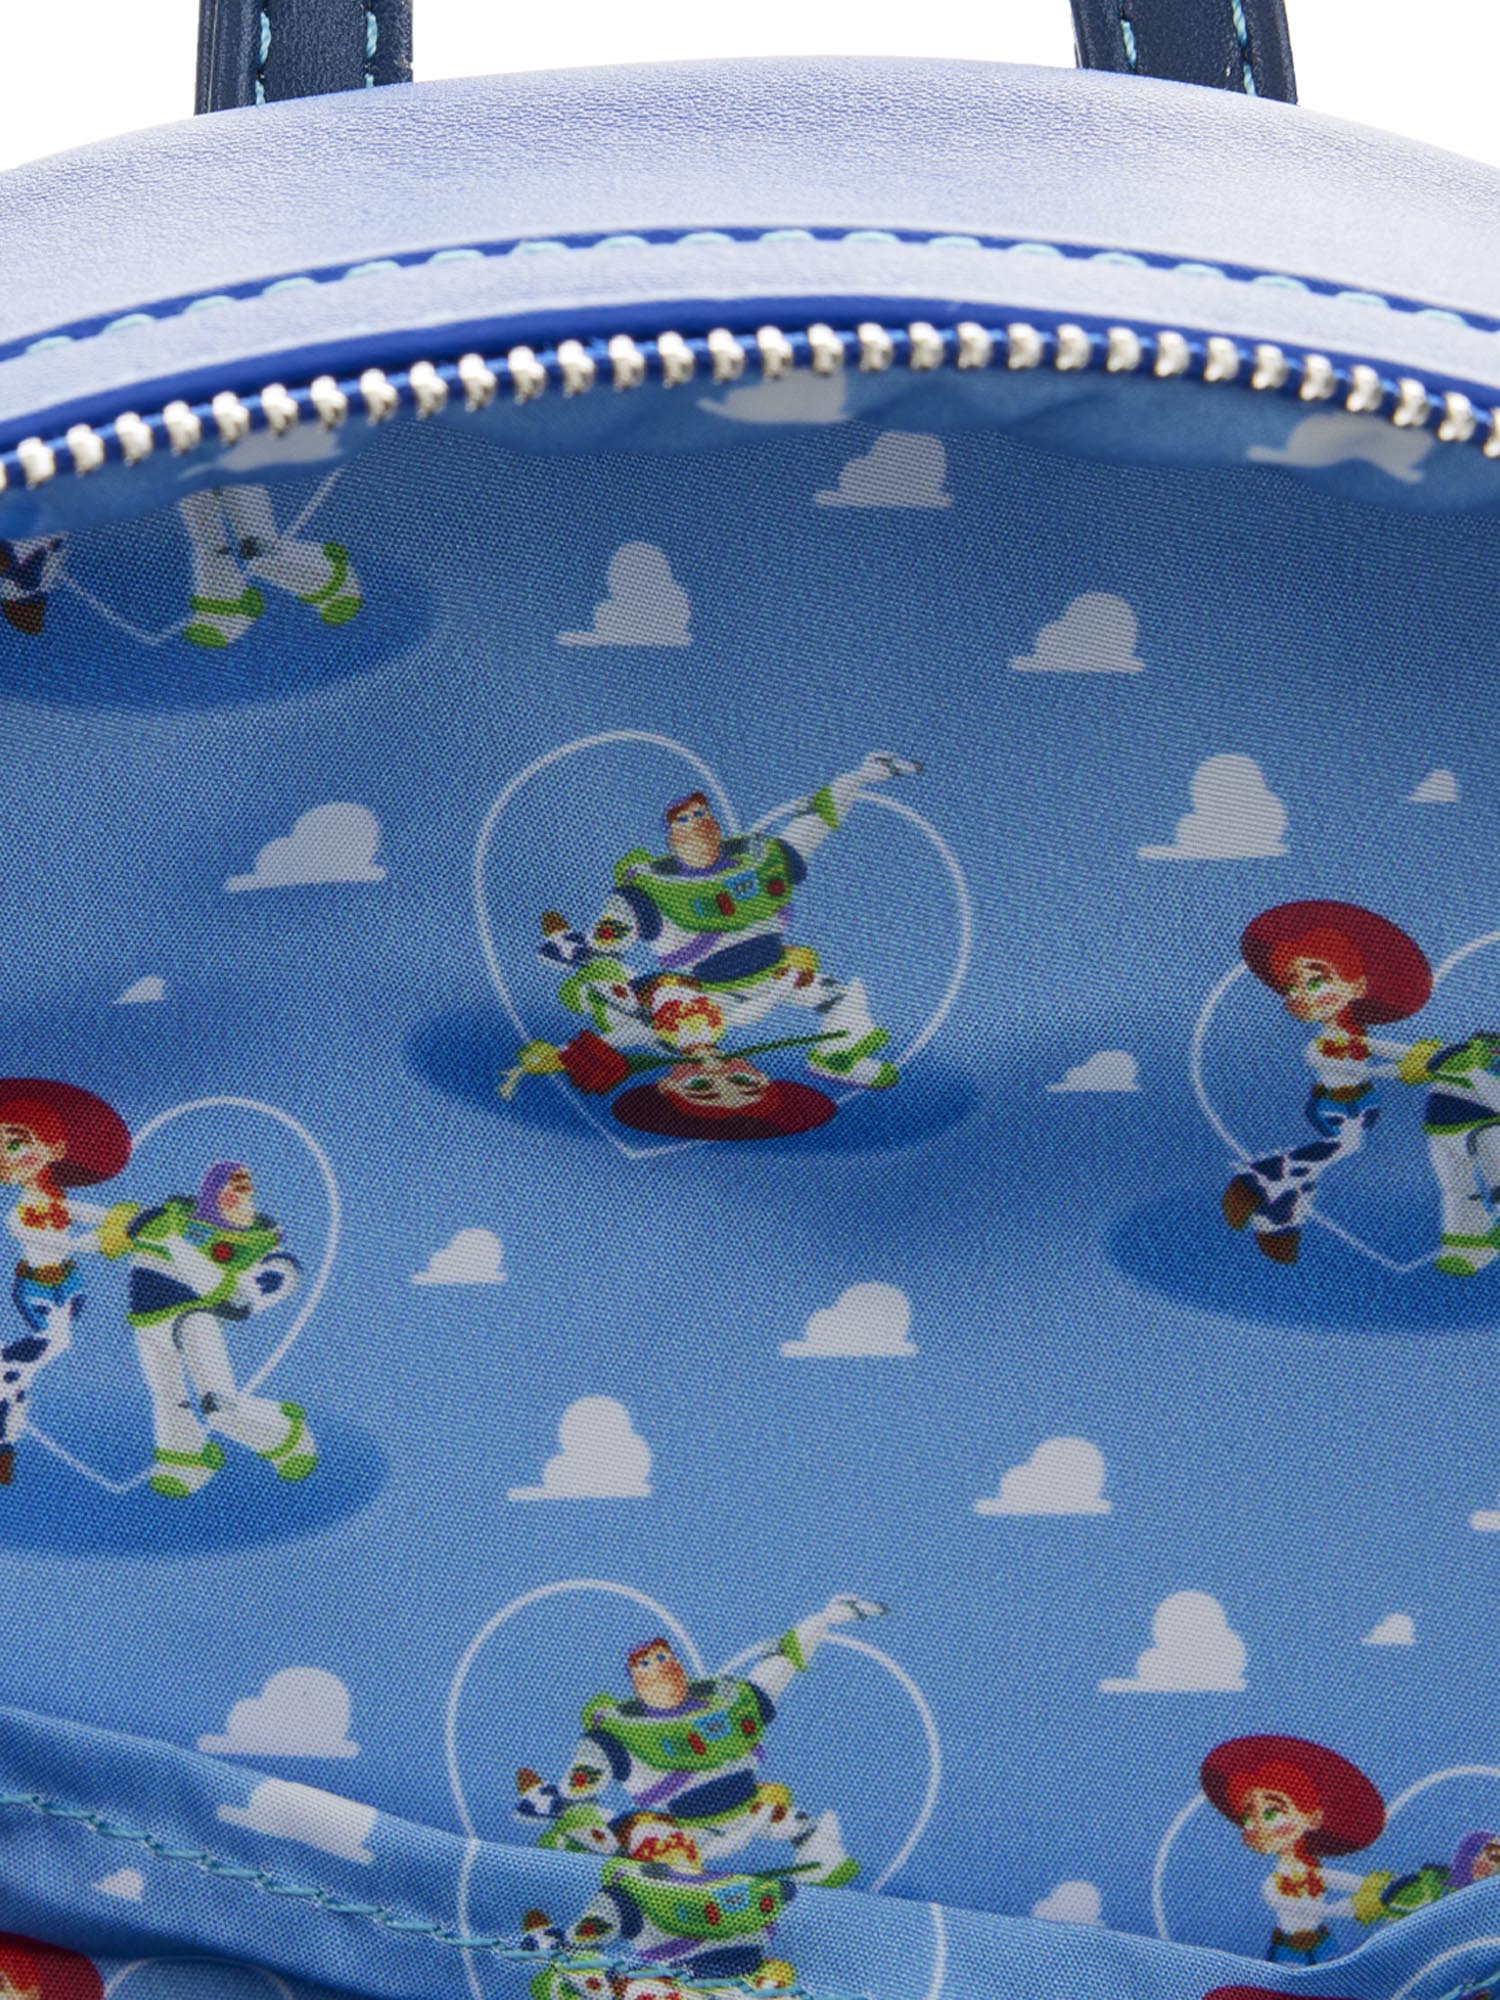 Loungefly x Pixar Toy Story Mini Backpack Handbag Buzz Lightyear & Jessie